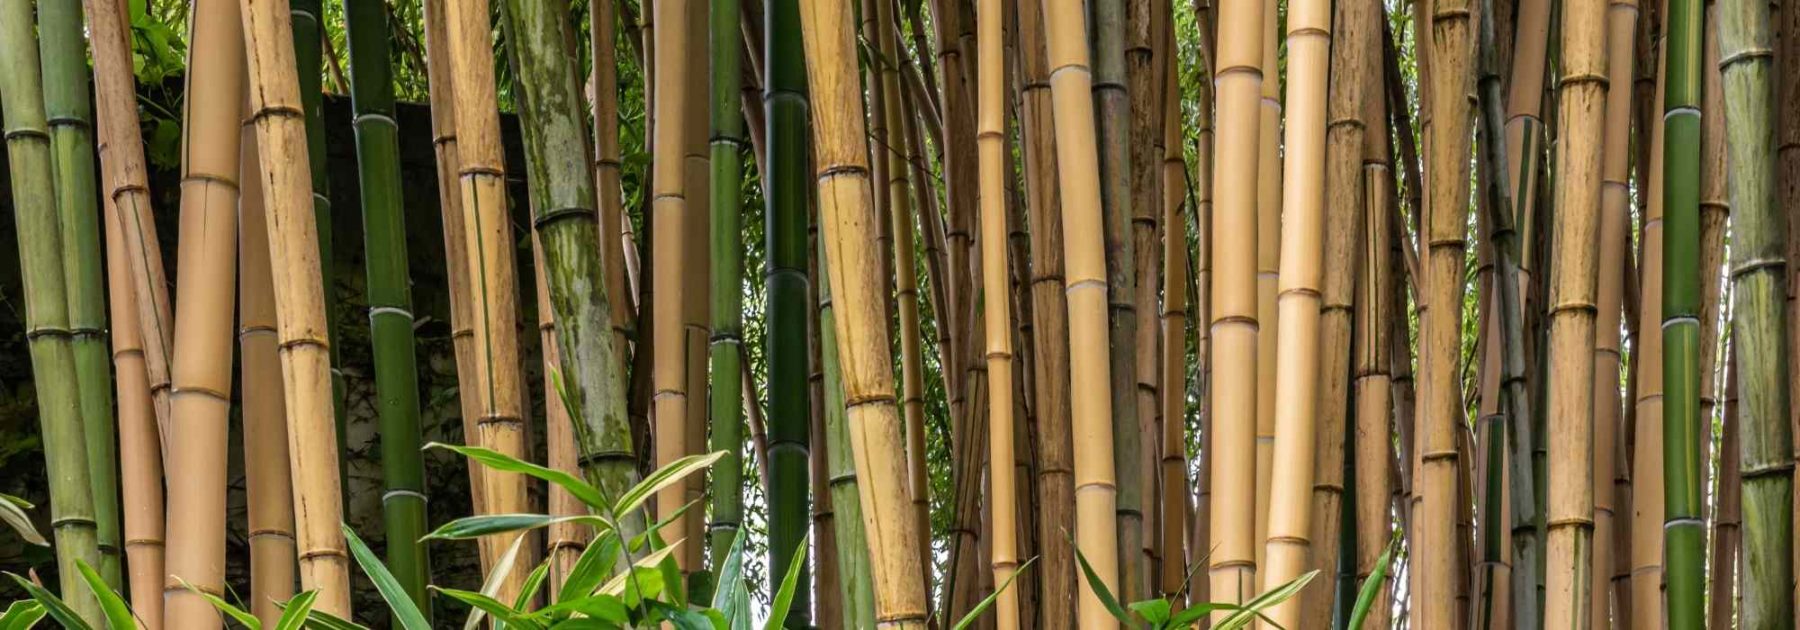 https://www.promessedefleurs.com/blogwp/wp-content/uploads/2022/09/Bambusa-bambou-planter-cultiver-entretenir-1800x630.jpg